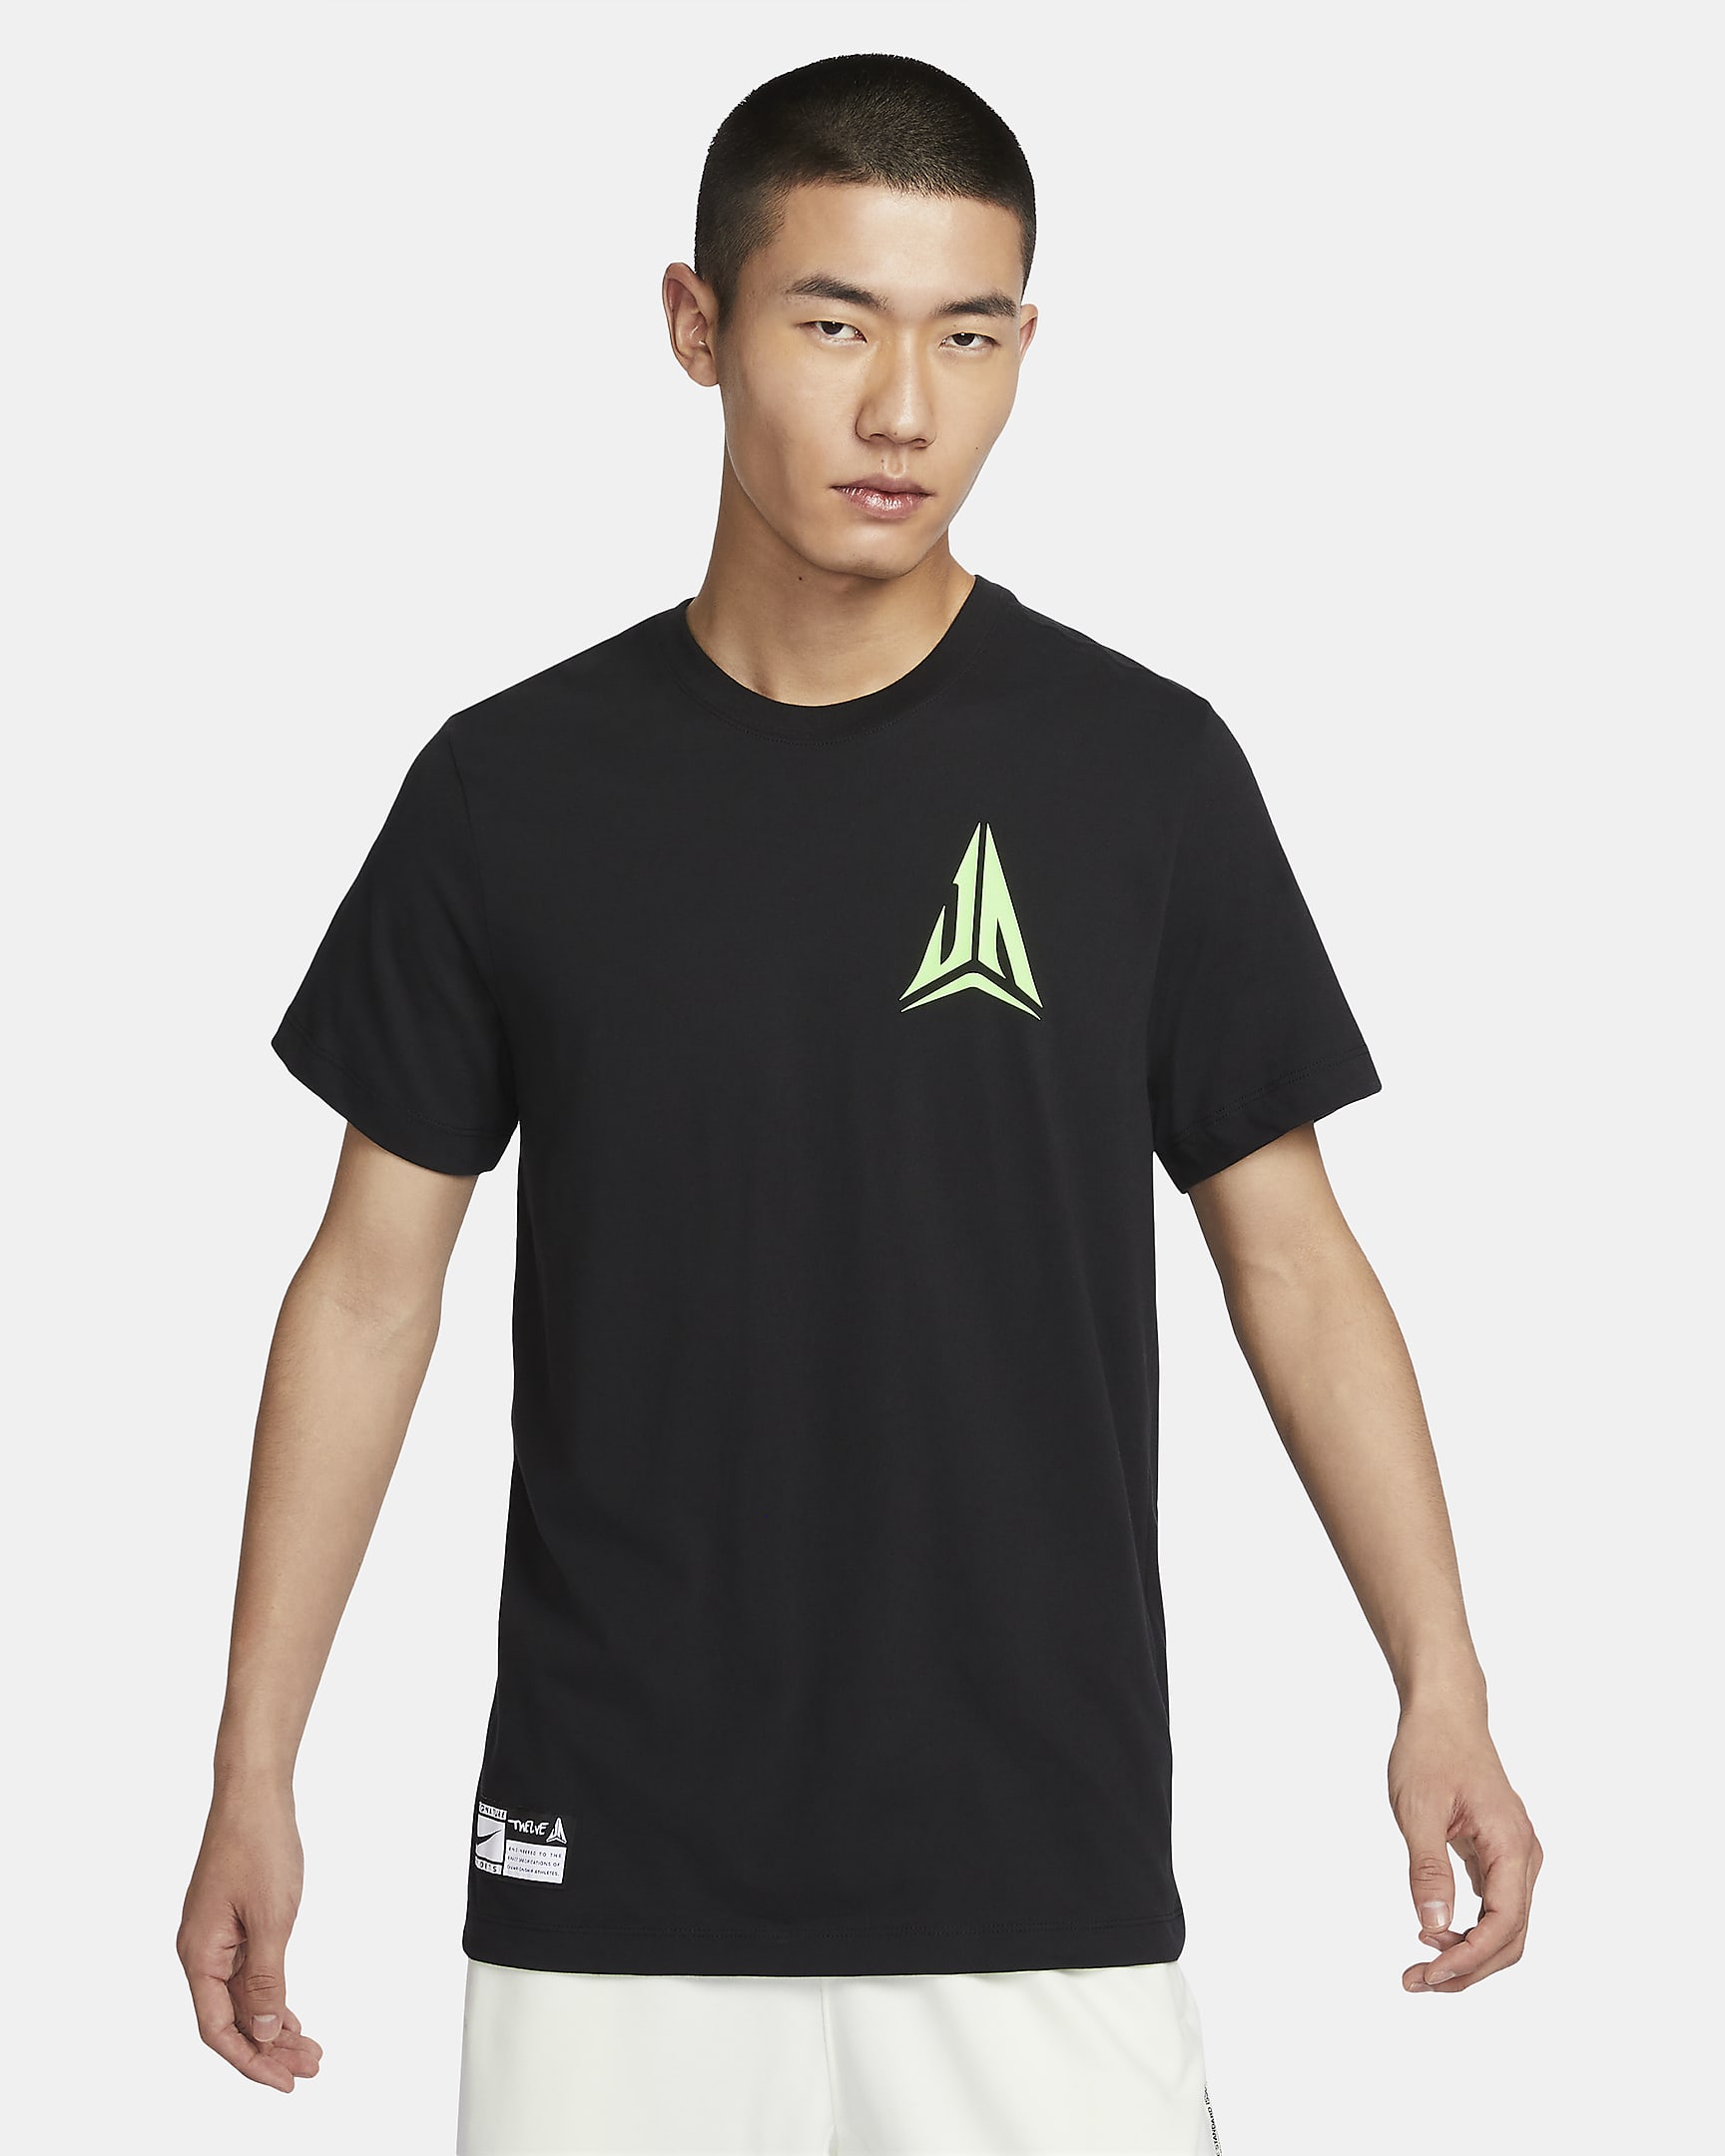 JA Men's Nike Dri-FIT Basketball T-Shirt - Black